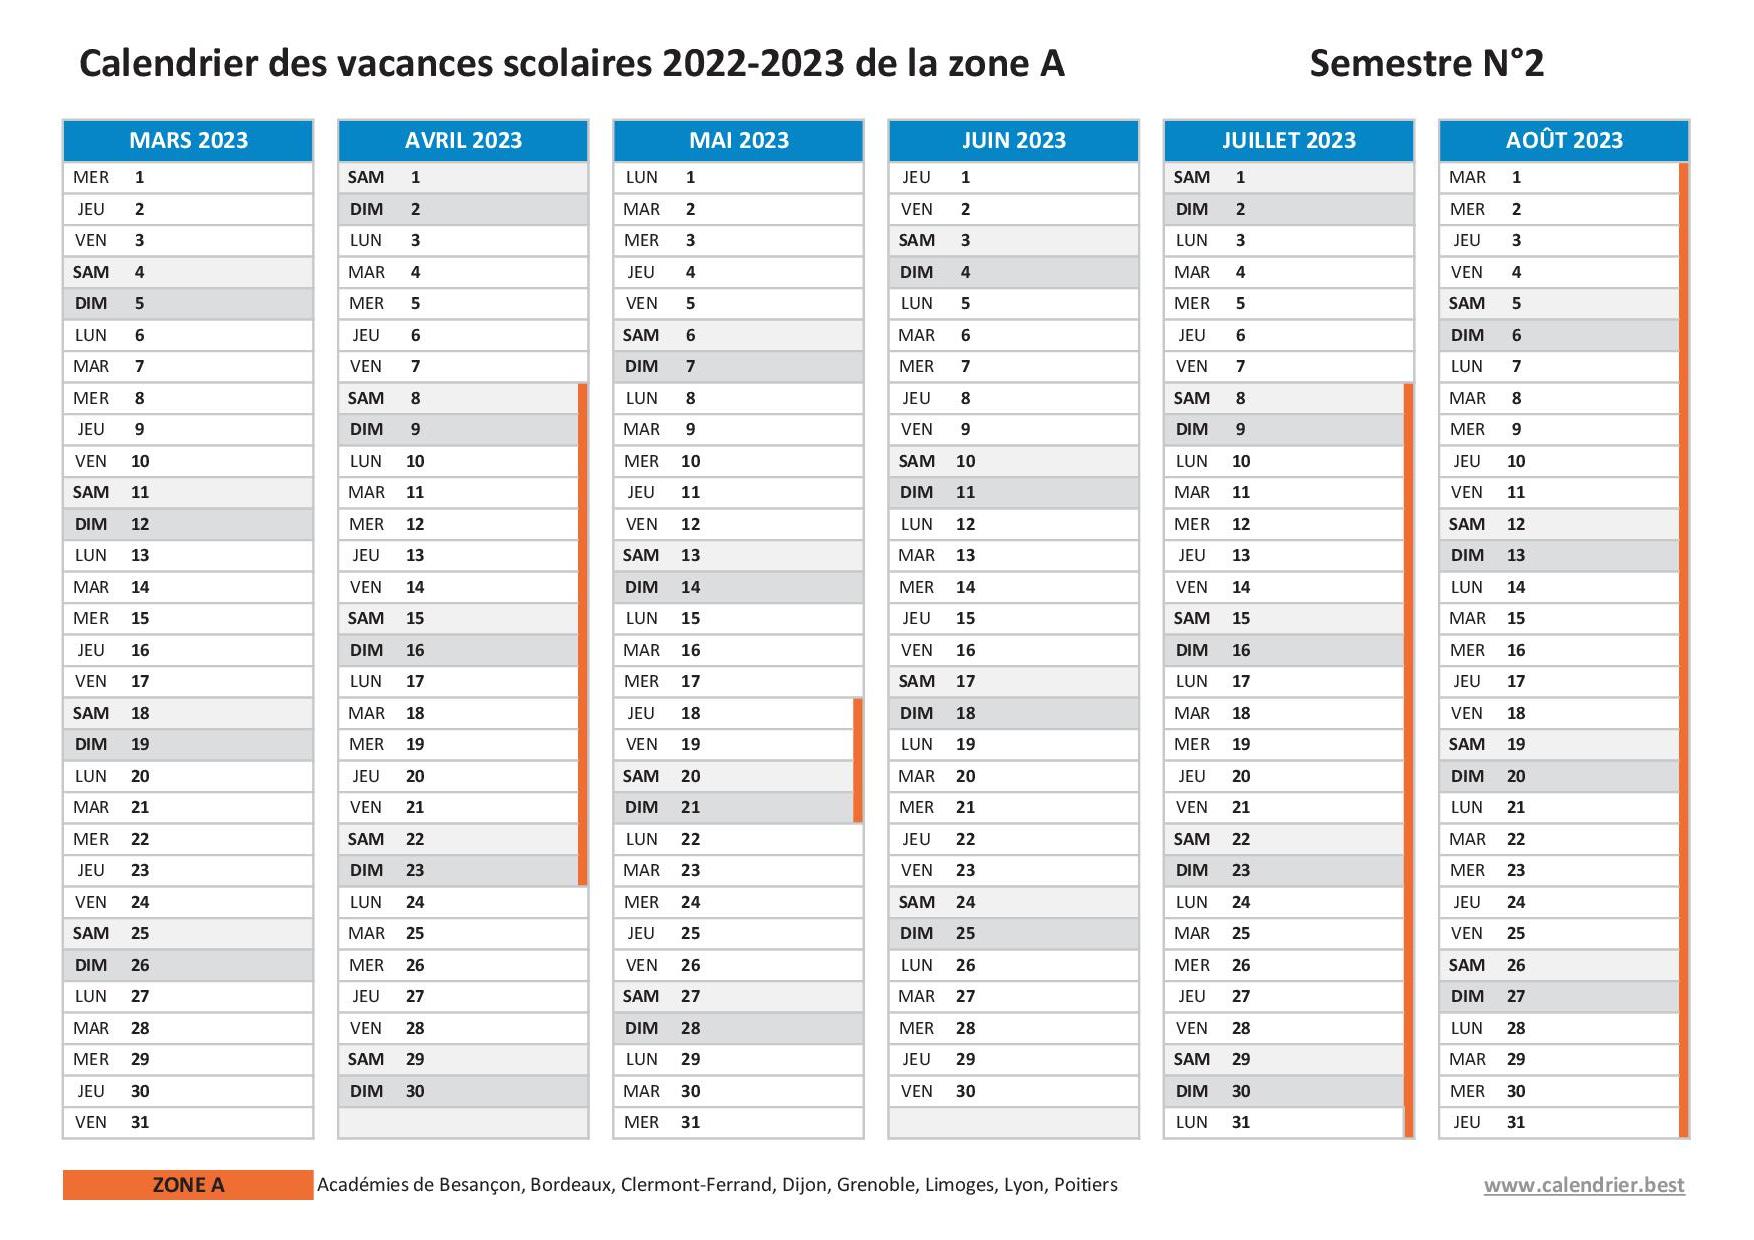 Vacances scolaires 2022 2023 Grenoble dates et calendrier scolaire